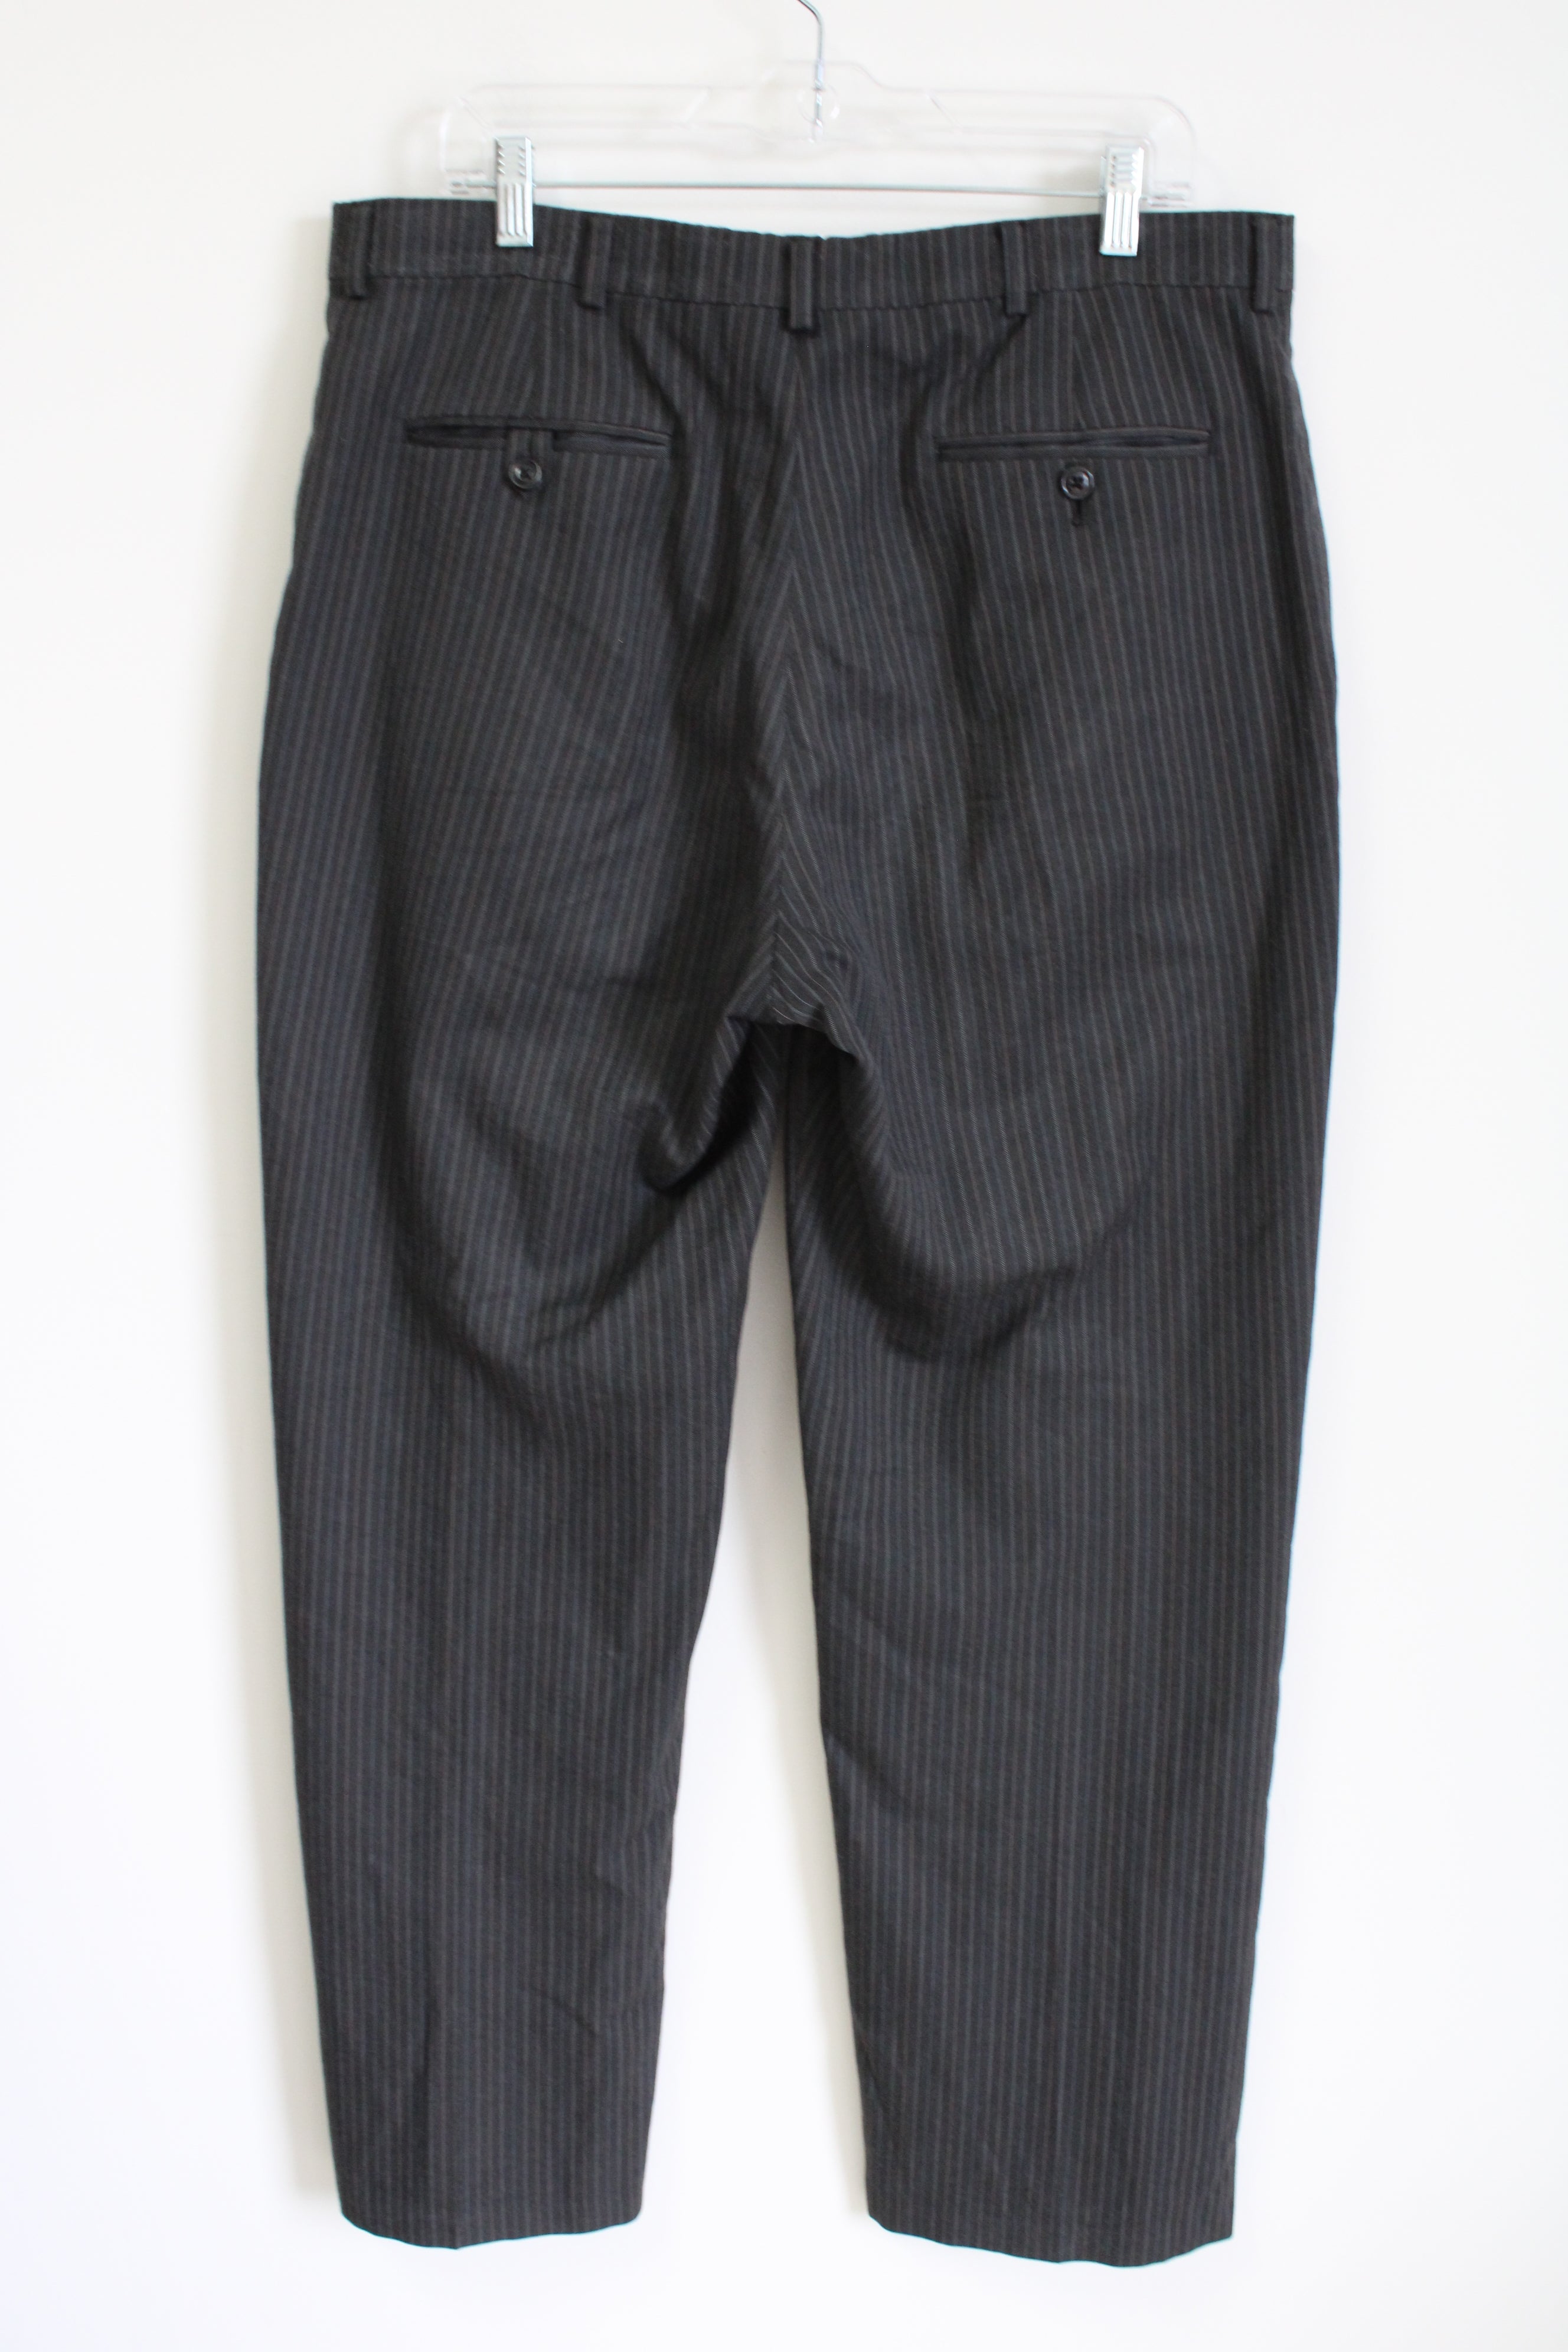 Haggar Gray Pinstriped Work Pants | 36X32